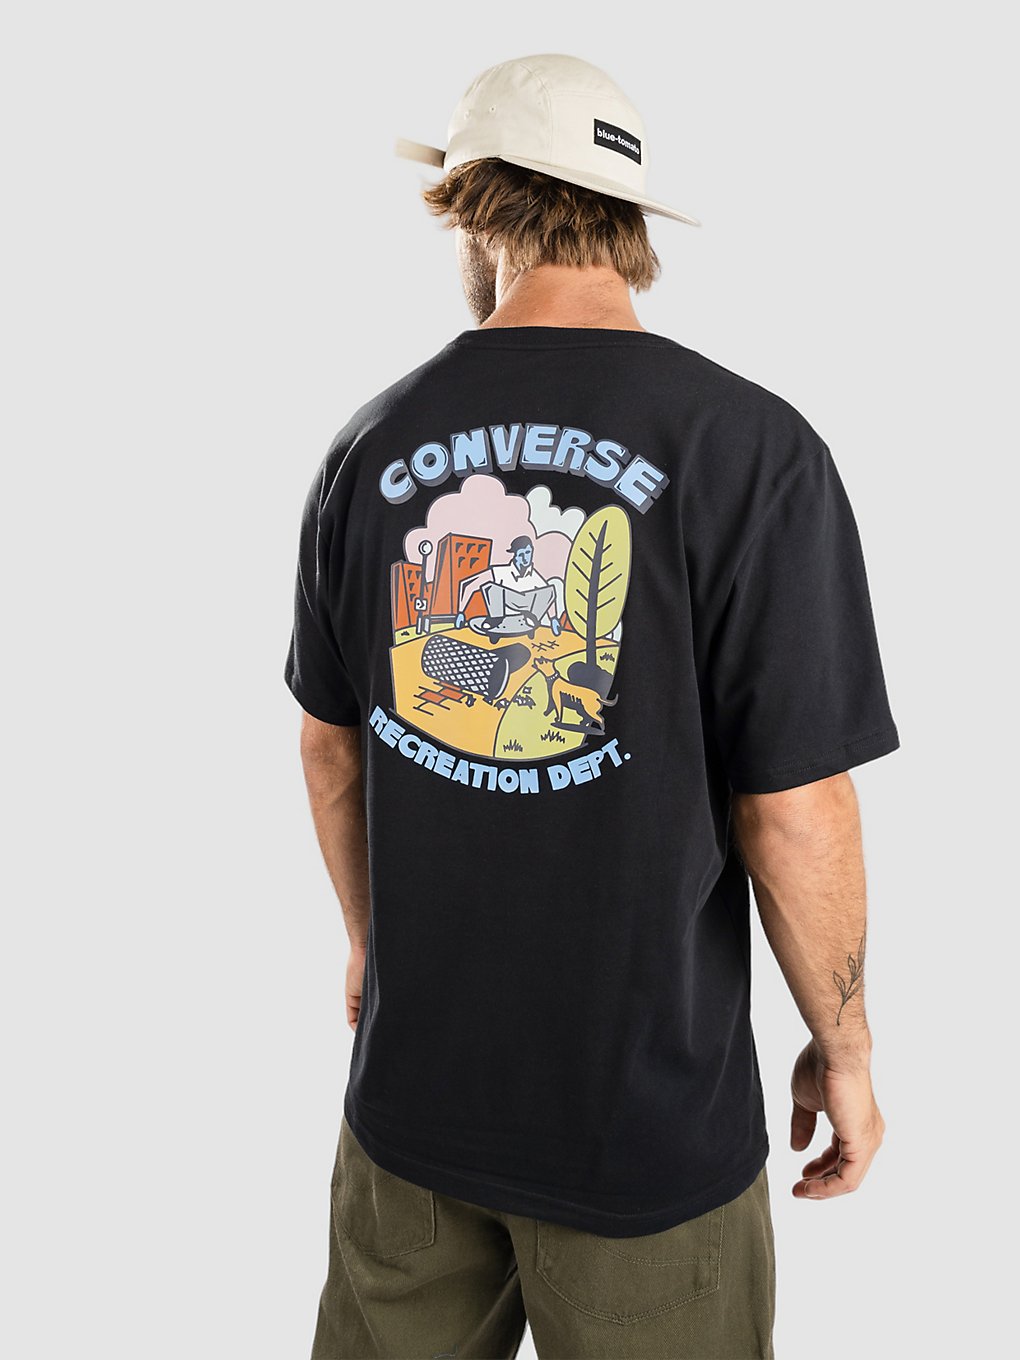 Converse Recreation Department Graphic T-Shirt zwart